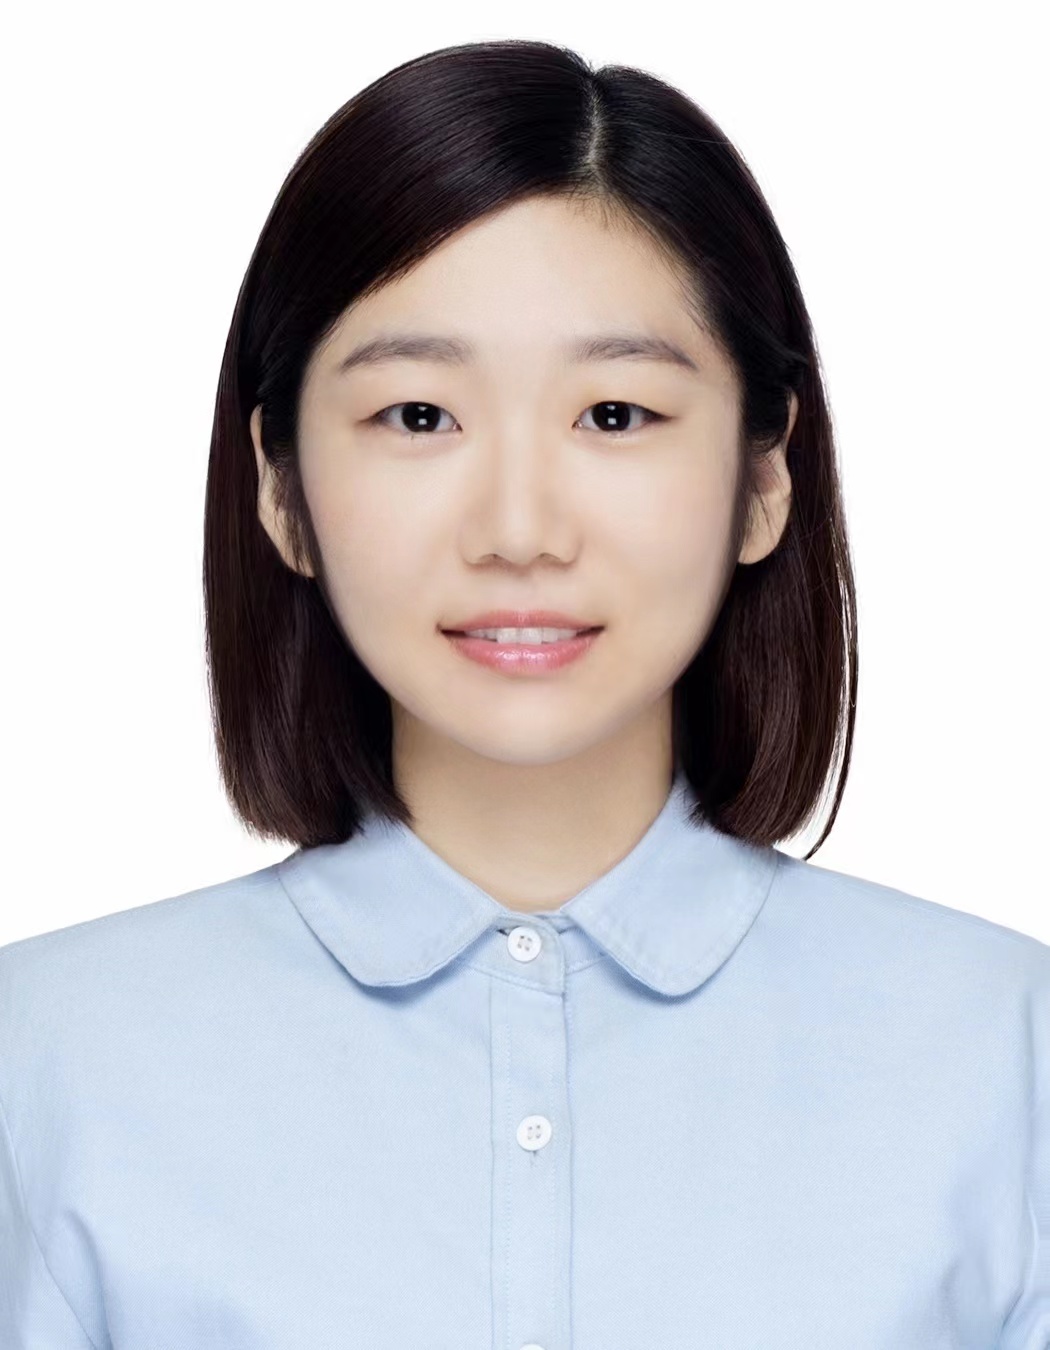 Headshot of Shengnan Zhang.